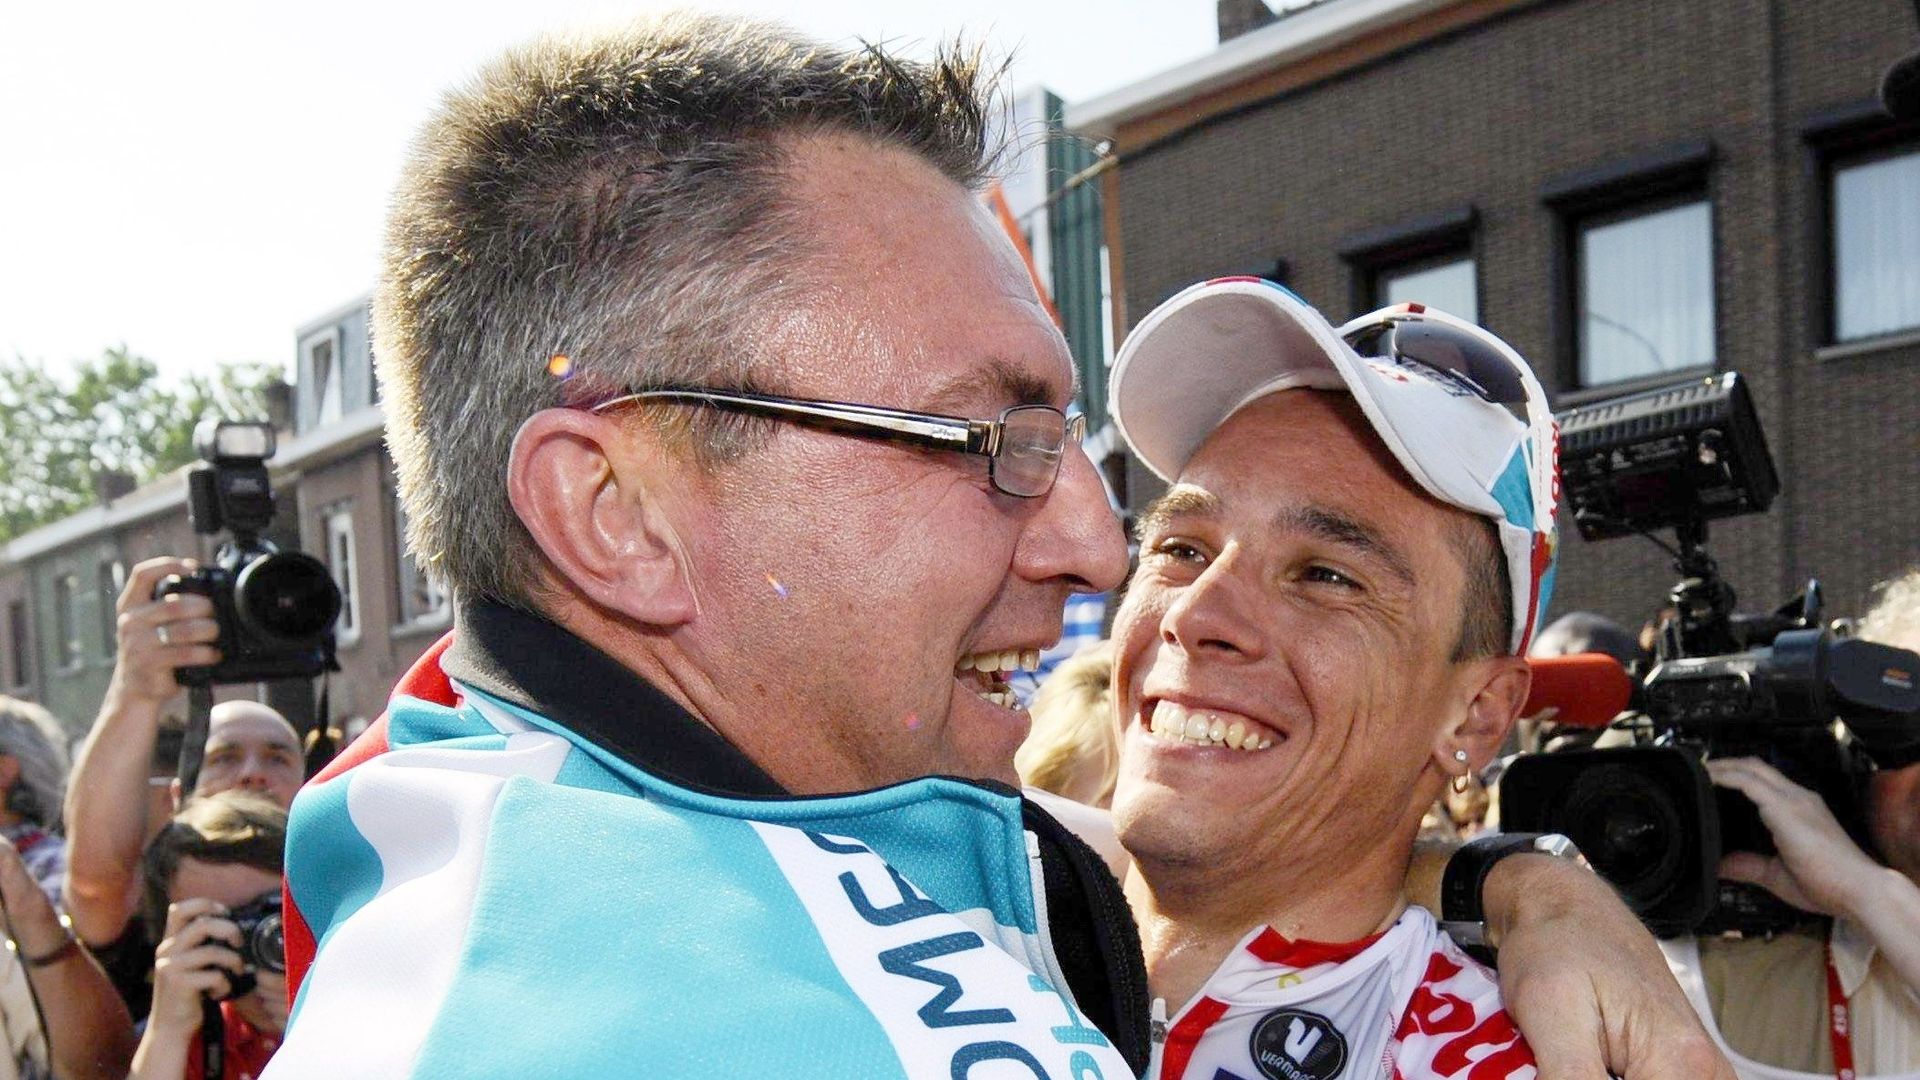 Dirk De Wolf félicite Philippe Gilbert à l'arrivée de Liège-Bastogne-Liège en 2011. Son protégé vient de s'offrir la doyenne des classiques. Un quadruplé historique pour le Belge qui a remporté avant cela la Flèche Brabançonne, l'Amstel Gold Race et la Fl